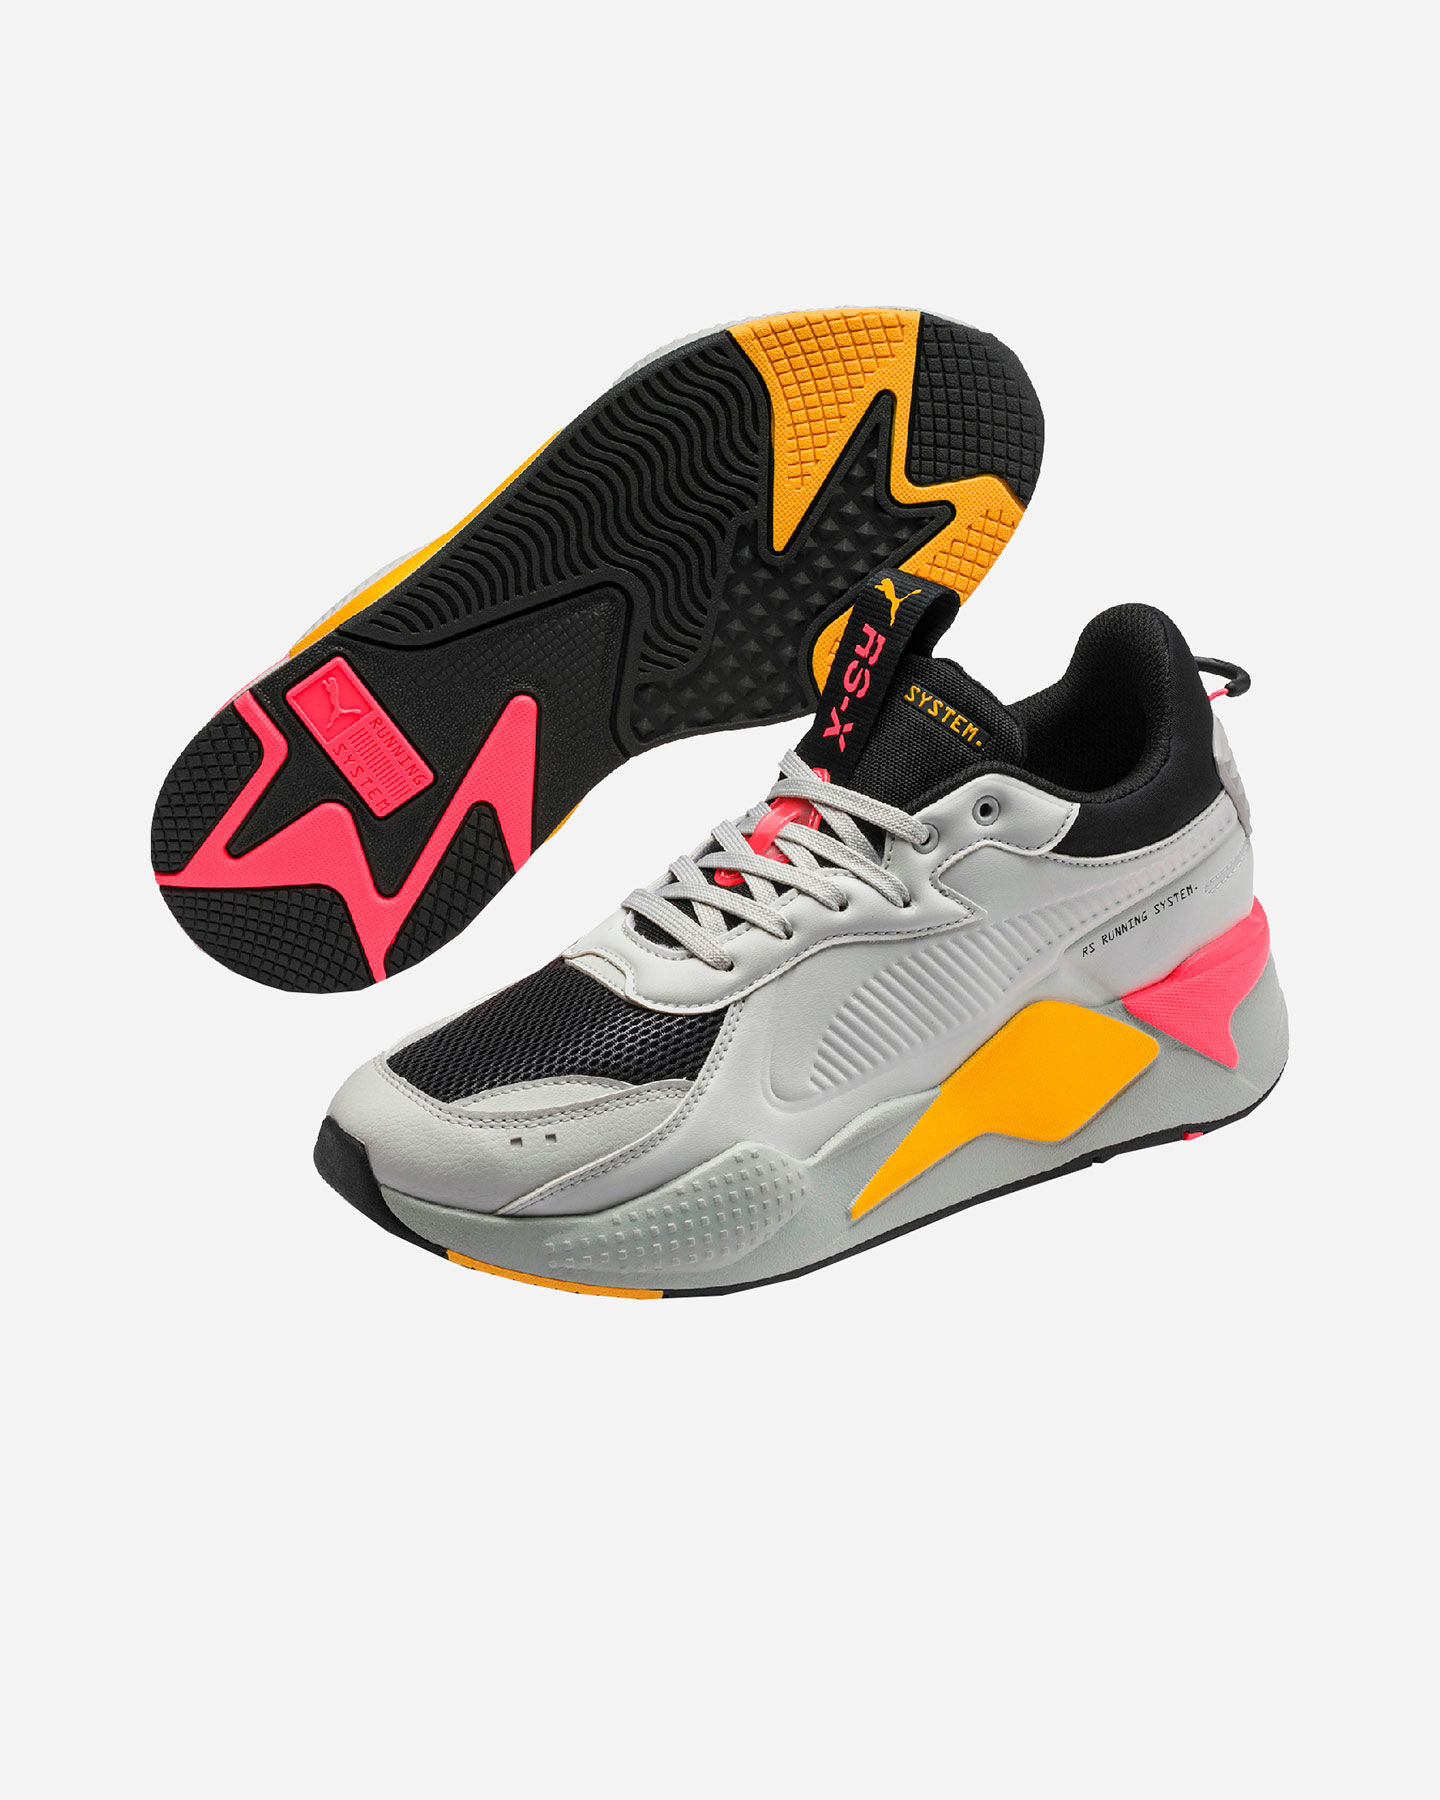  Scarpe sneakers PUMA RS-X MASTER M S5172899|03|3 scatto 1